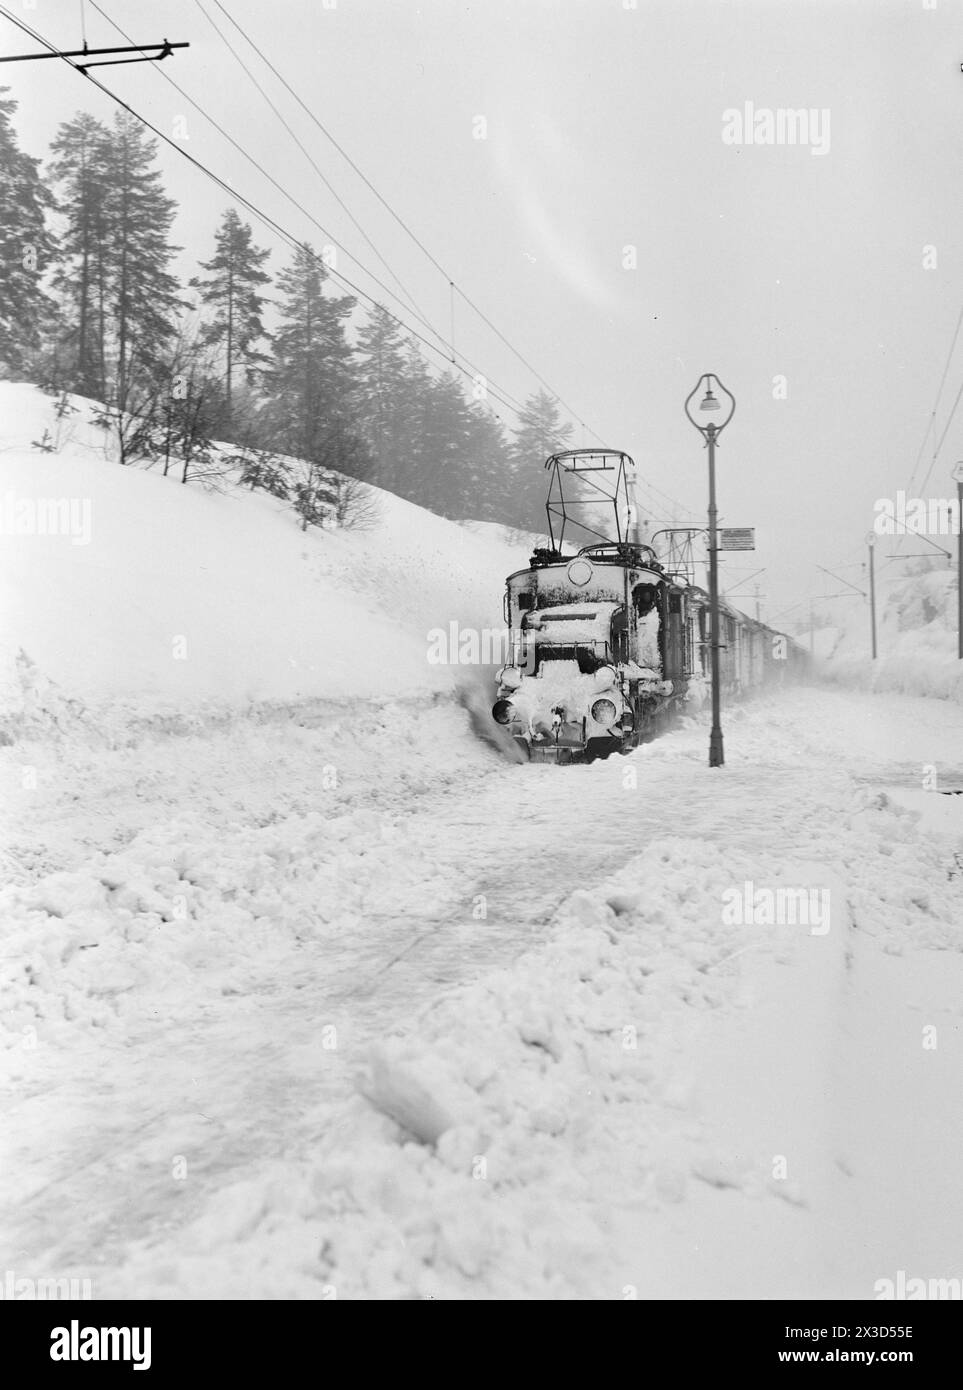 Effettivo 05- 1951: Norvegia meridionale coperta di neve. Lungo le strade, i bordi dell'aratro alti quattro cinque metri, la neve è così alta che si può facilmente uscire dal secondo piano e le persone devono costantemente salire sui tetti per liberare la neve da lì. Due volte il Sørlandsbanen è stato bloccato dalla neve quest'inverno. Il treno di Oslo passa da Vegårshei mercoledì 21 febbraio. Fu il primo treno sulla rotta in 3½ giorni. 0g prima che arrivasse, c'era un sacco di sudore sulla linea ferroviaria. Foto: Arne Kjus / Aktuell / NTB ***la foto non è stata elaborata*** il testo dell'immagine viene tradotto automaticamente Foto Stock